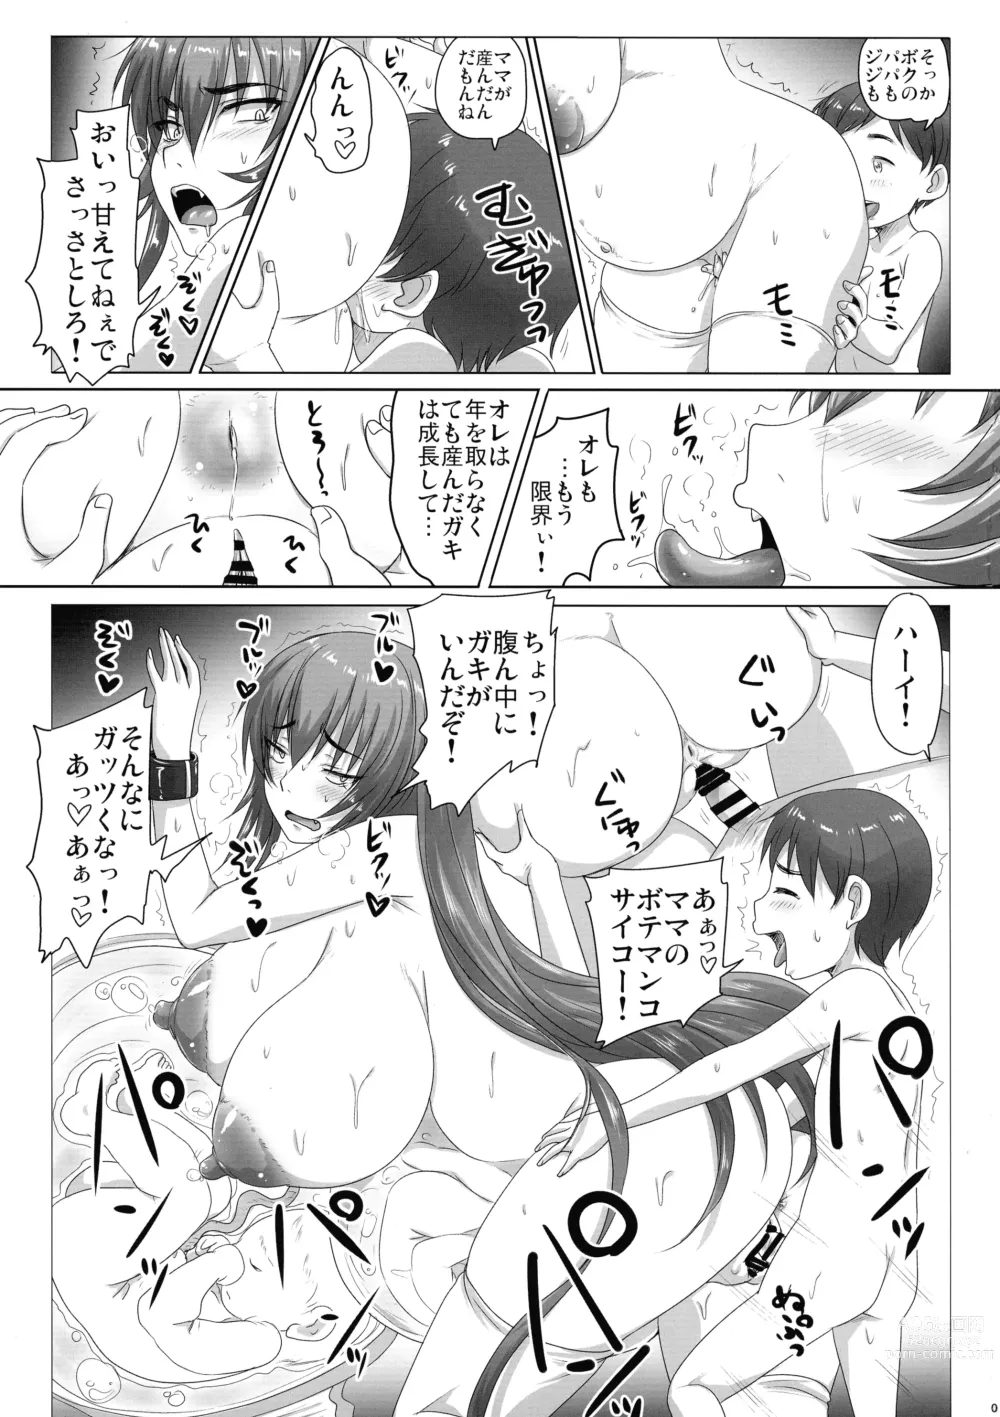 Page 5 of doujinshi Sekai wa Doko mo Pandora no Hako